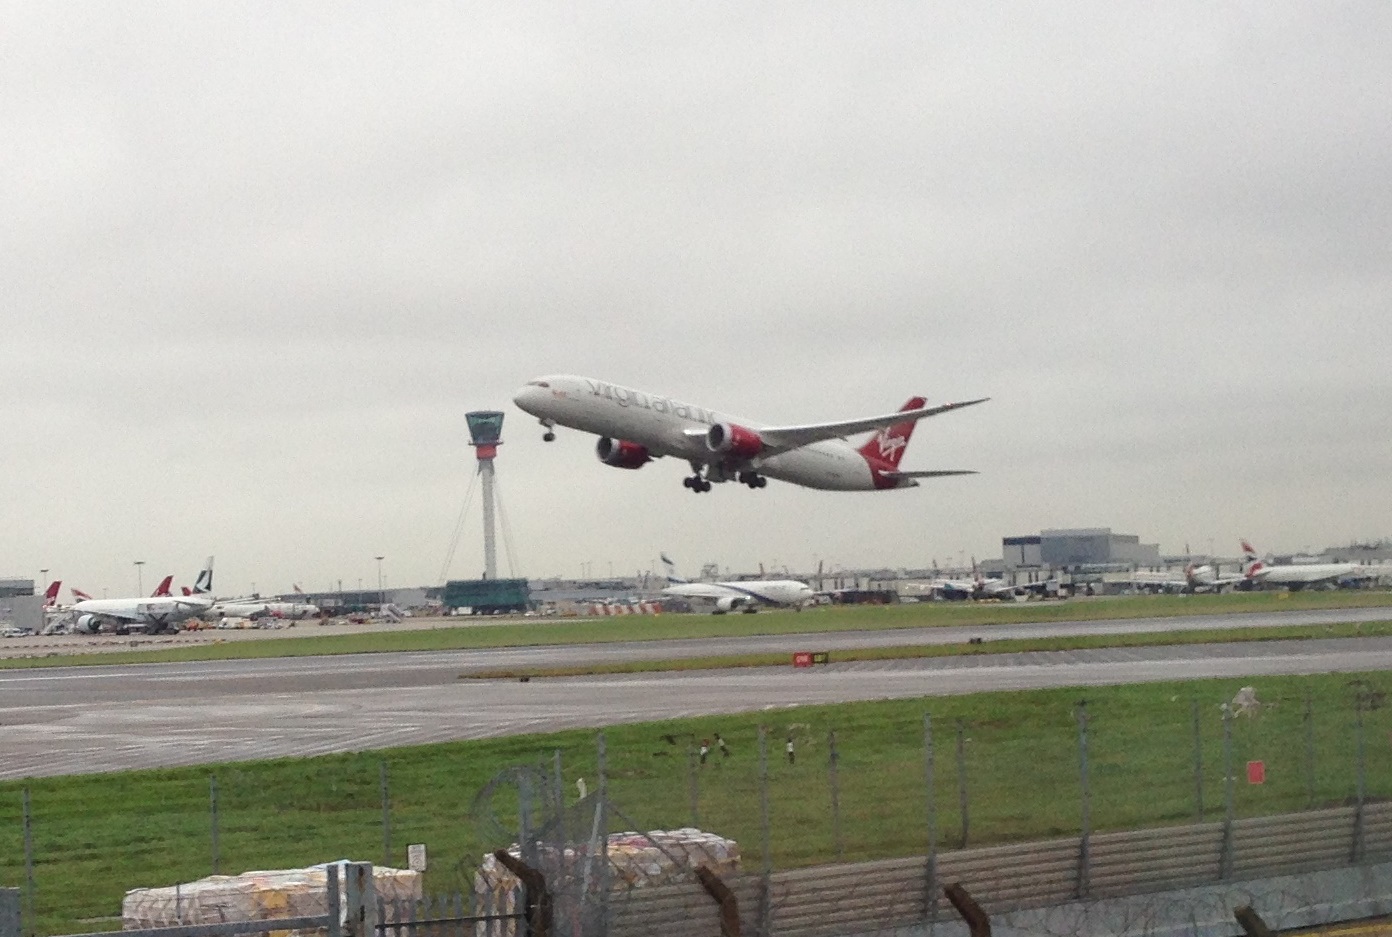 Virgin Atlantic, Heathrow’daki Slotlarını Önce Satacak, Sonra Kiralayacak